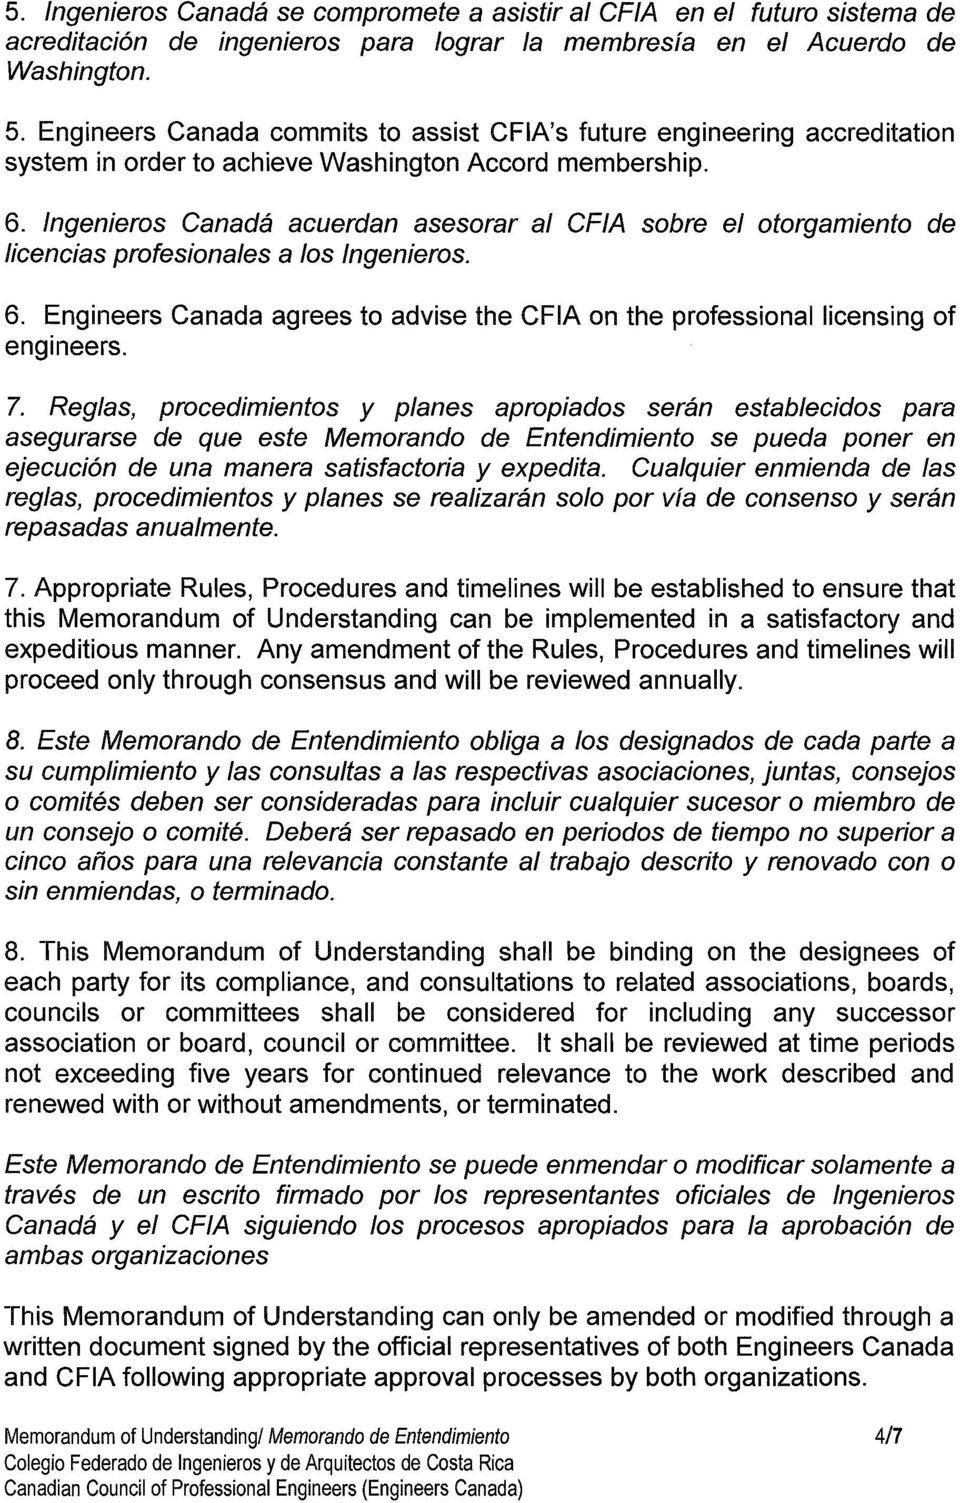 Ingenieros Canada acuerdan asesorar al CFIA sobre el otorgamiento de licencias profesionales a los Ingenieros. 6. Engineers Canada agrees to advise the CFIA on the professional licensing of engineers.